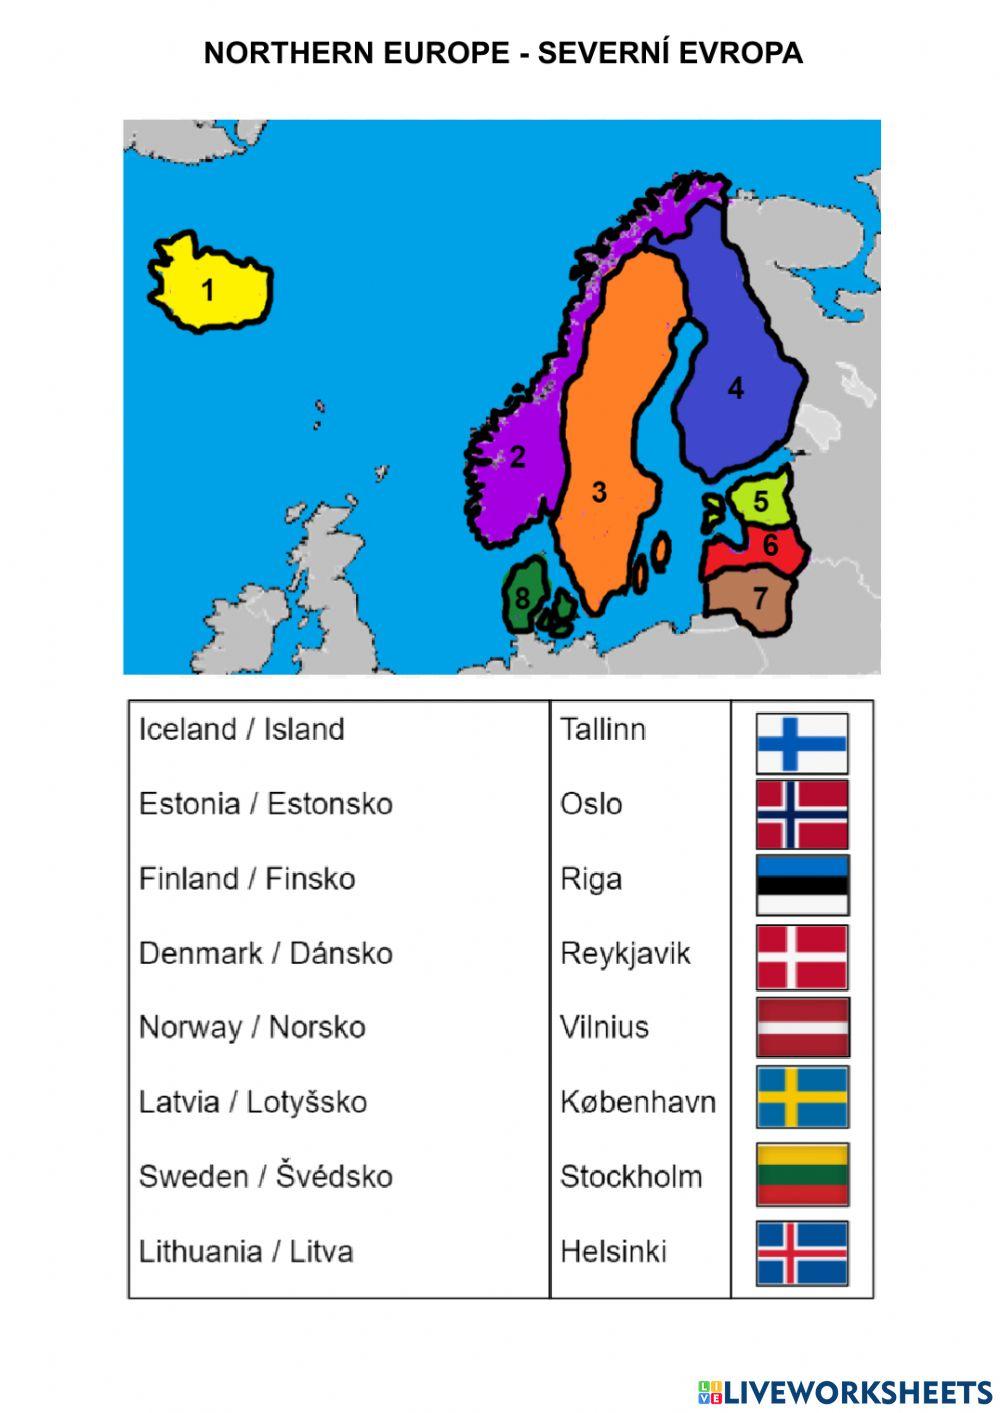 Northern Europe - Severní Evropa